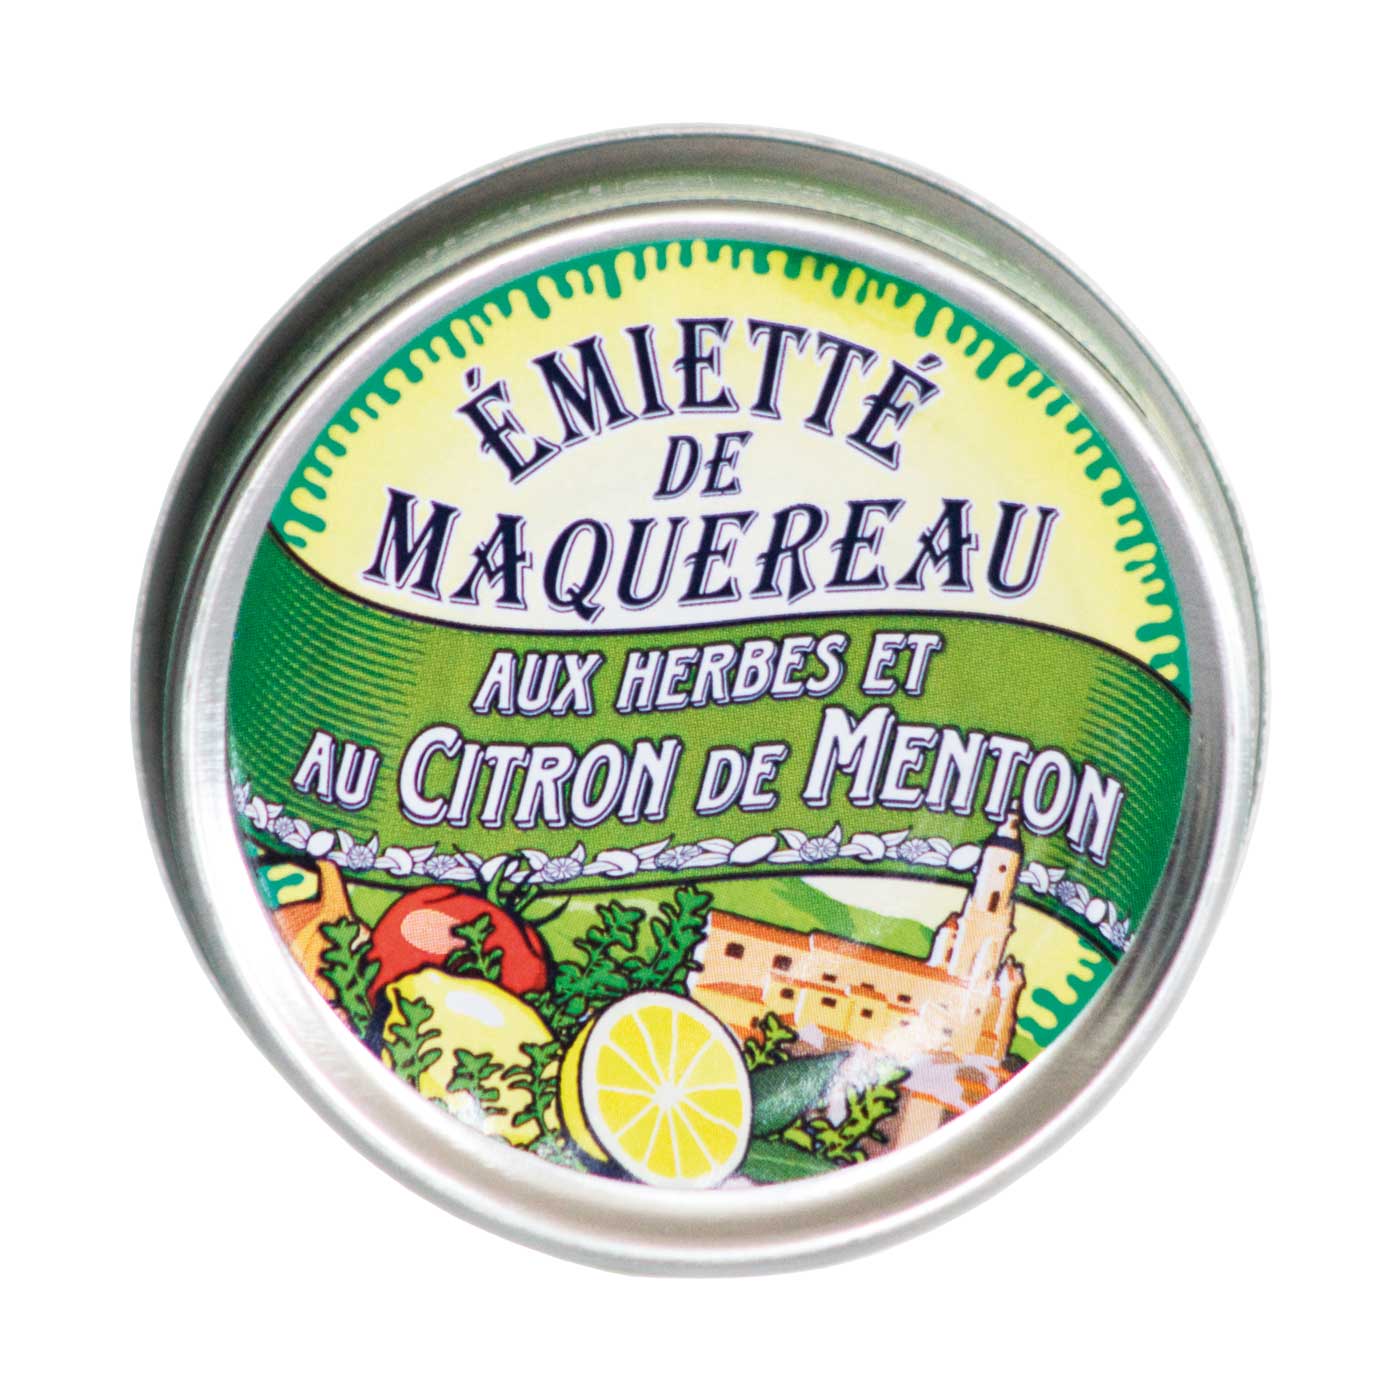 Emietté van Makreel met kruiden en Menton Citroen